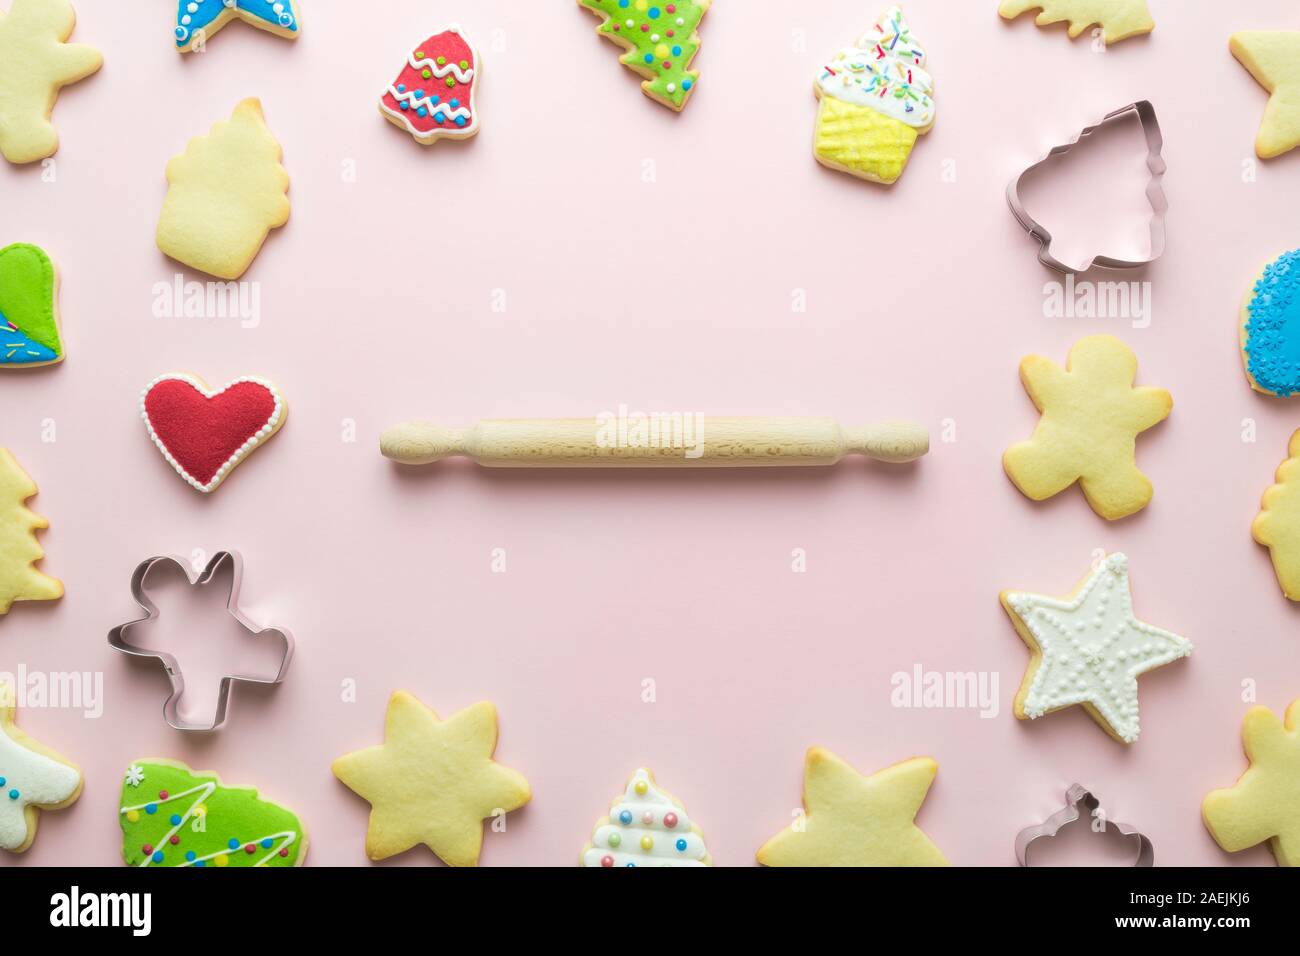 Motif de biscuits de Noël et d'un emporte-pièce avec rouleau à pâtisserie résumé sur rose. L'espace pour copier. Banque D'Images